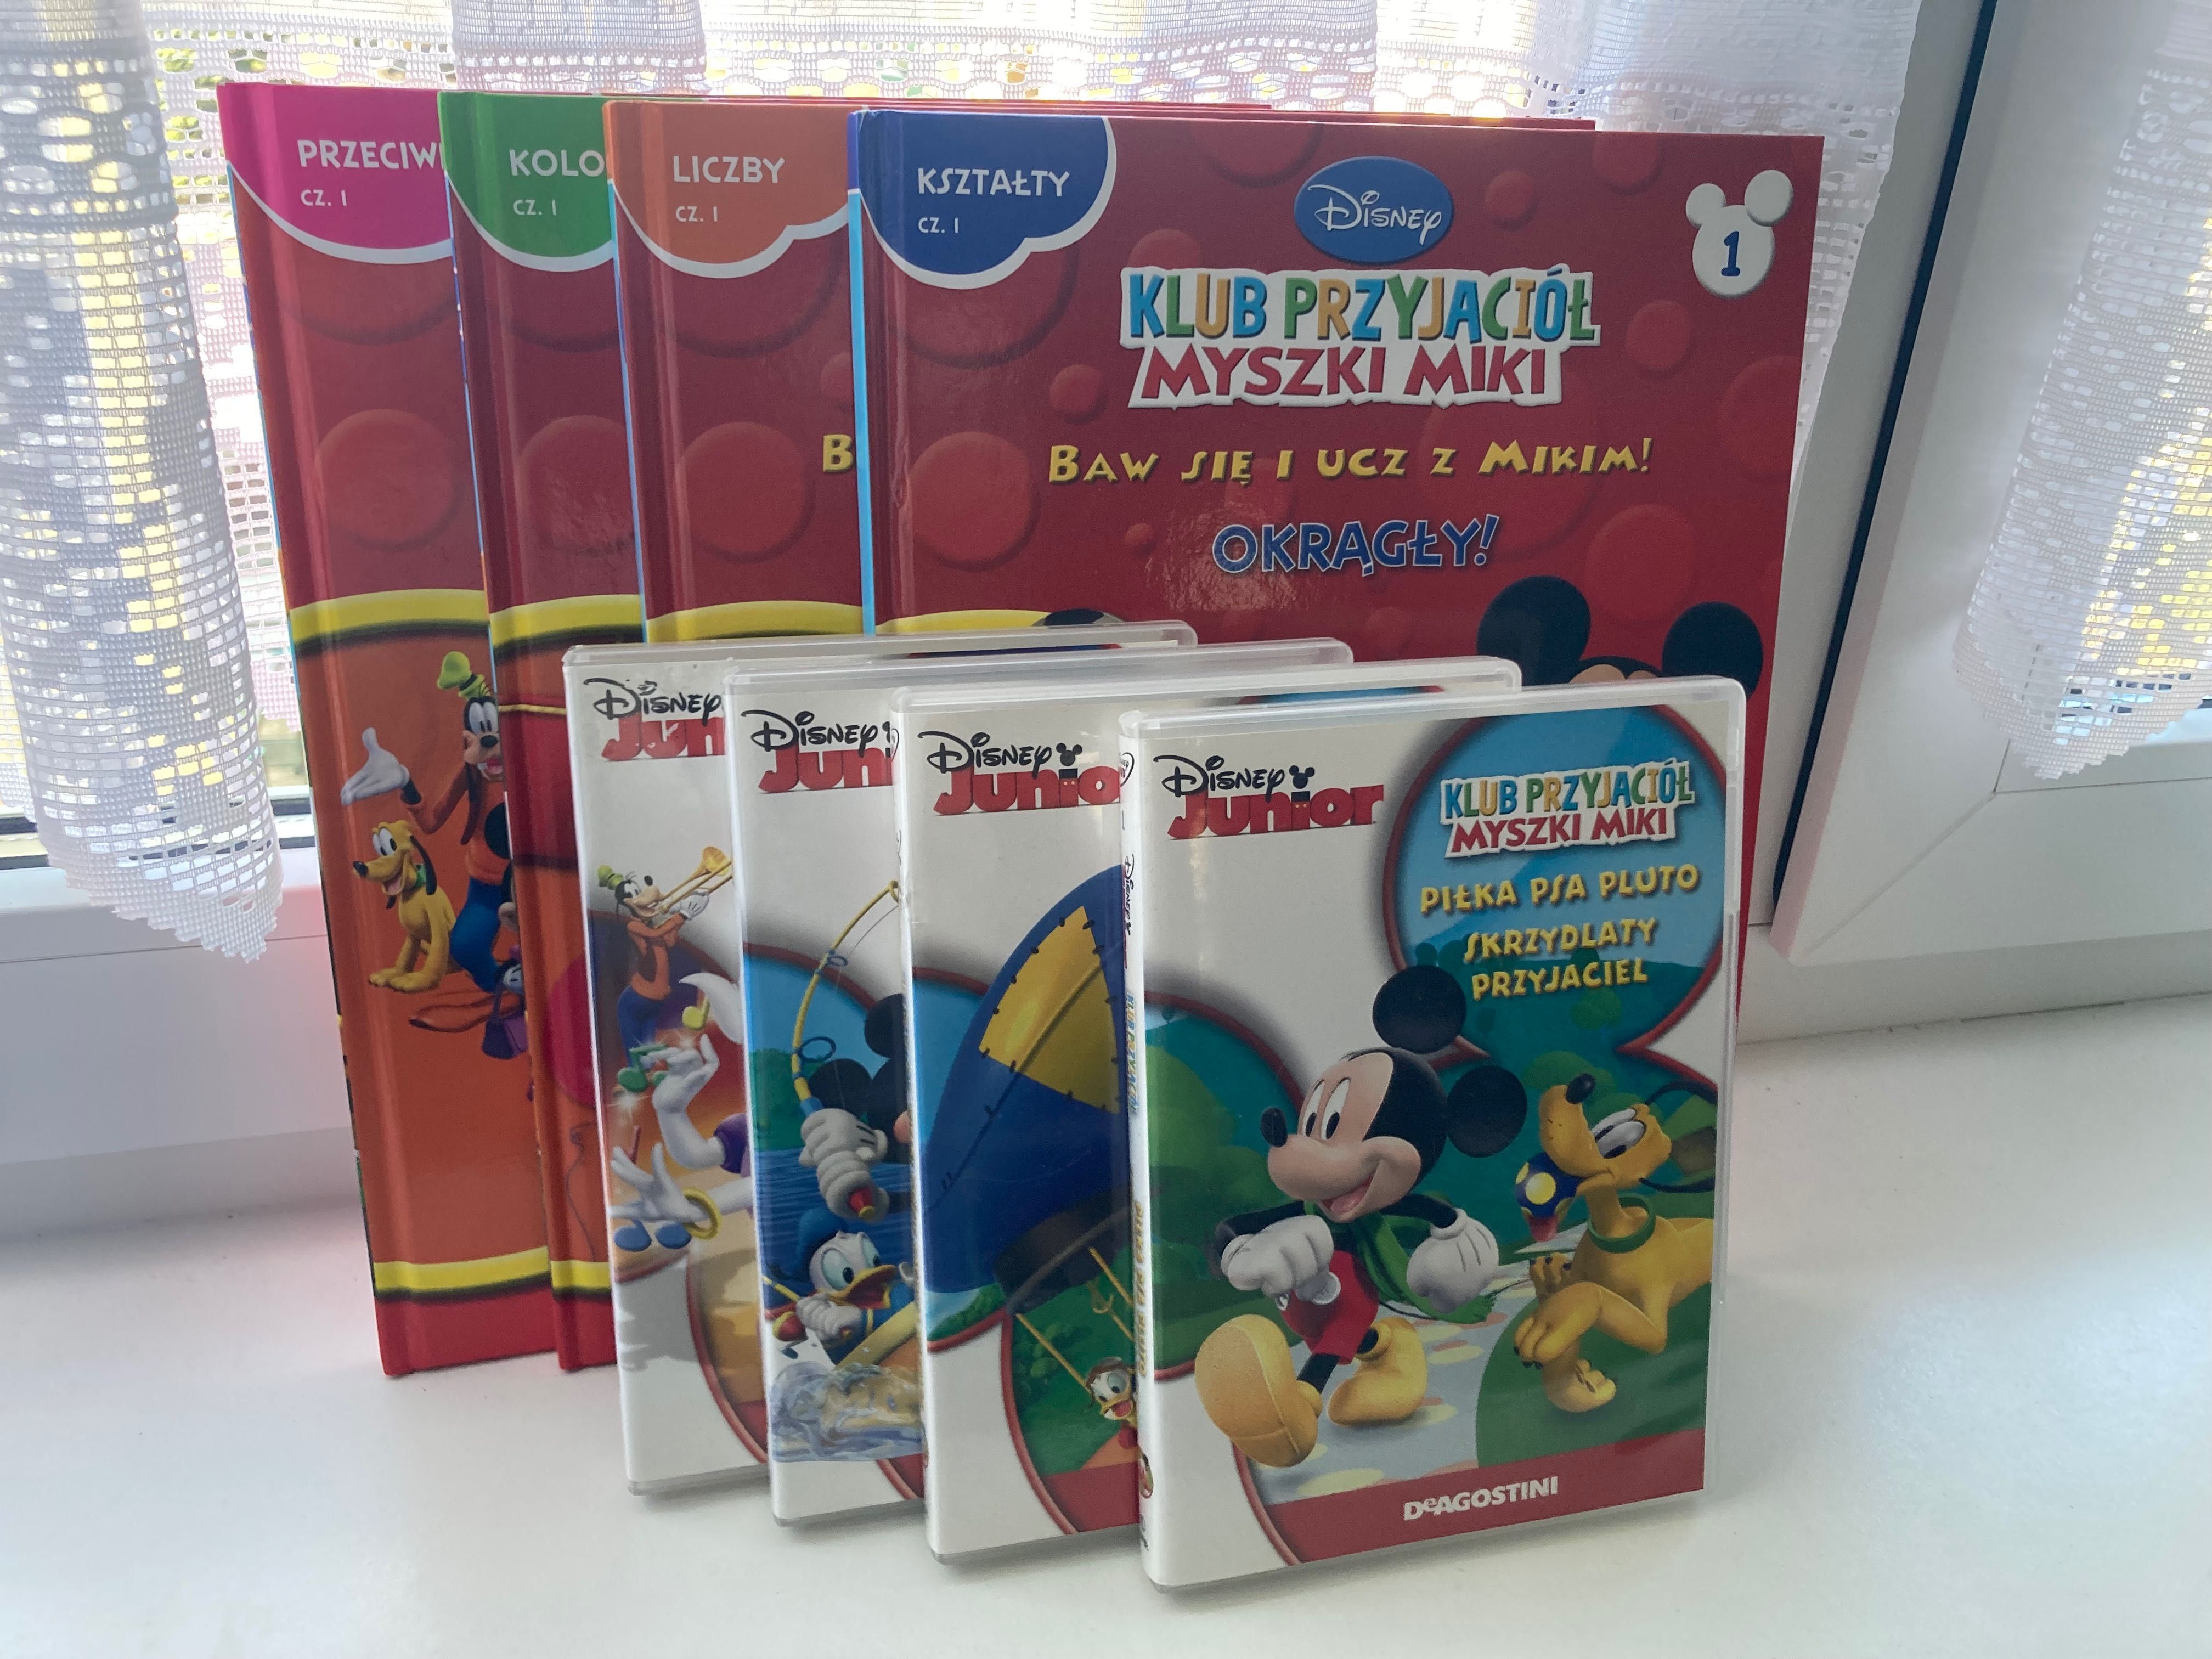 Książki i płyty DVD Klub Przyjaciół Myszki Miki, Disney, DeAgostini